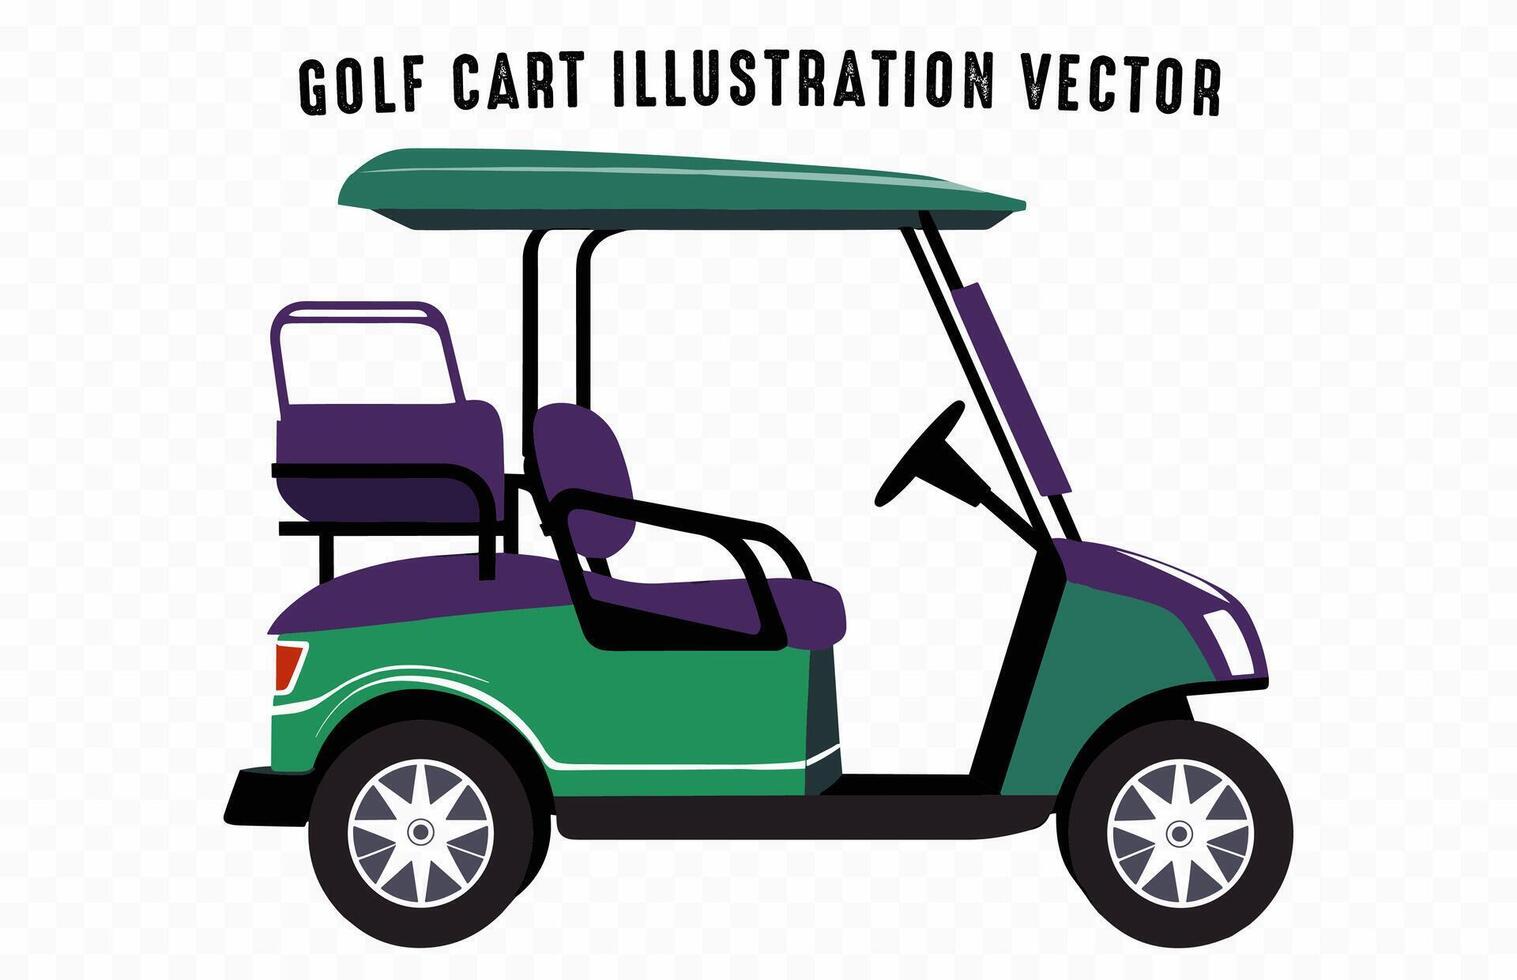 le golf Chariot illustration isolé sur une blanc arrière-plan, une club voiture véhicule vecteur